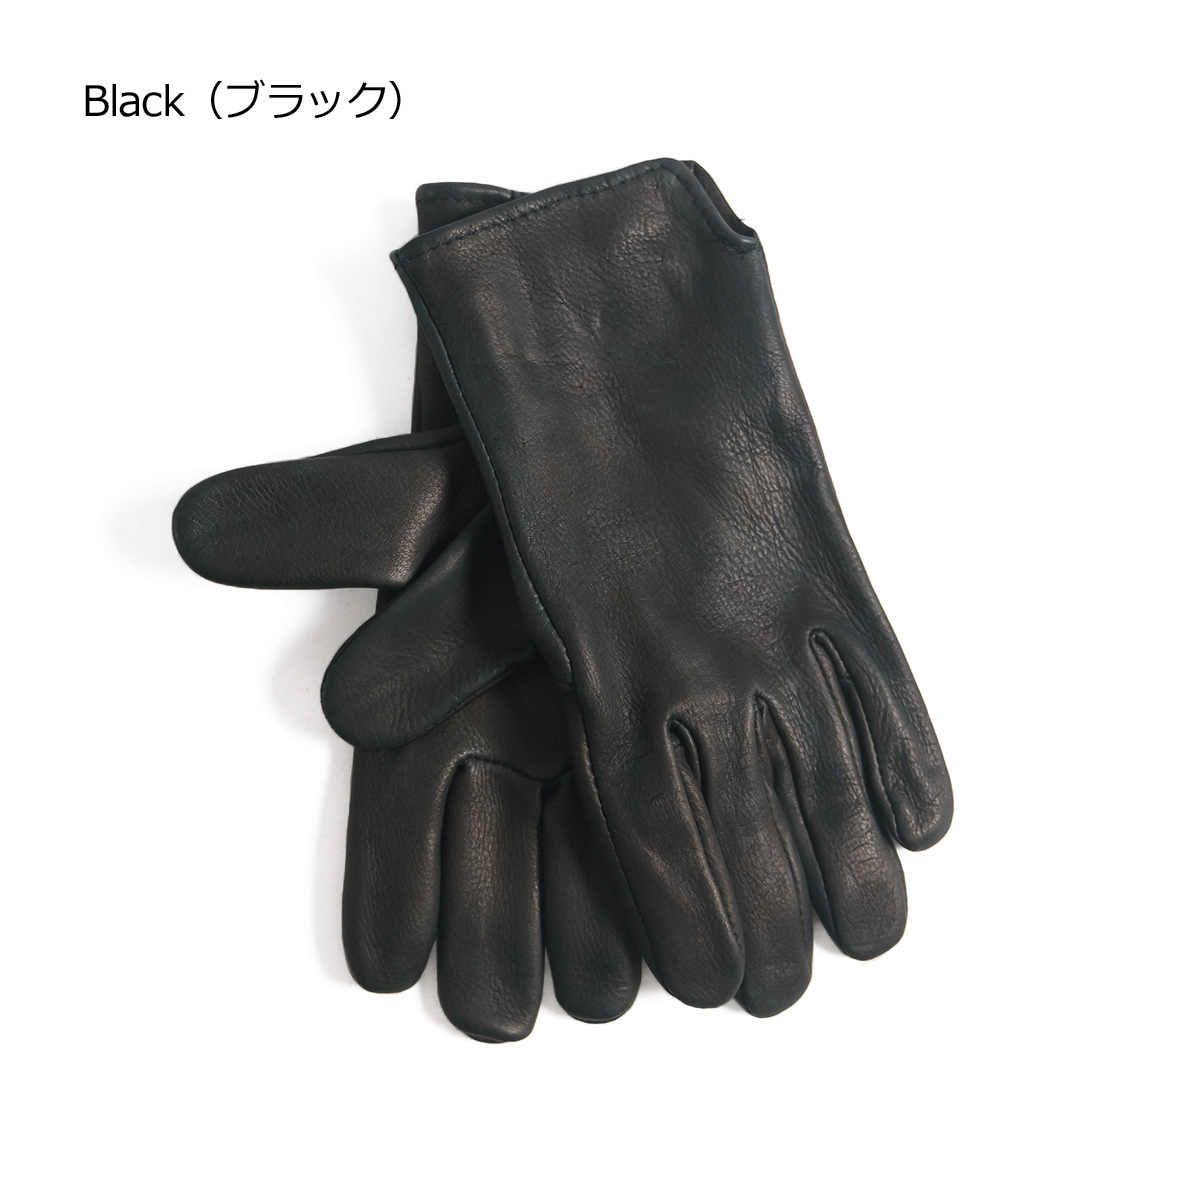 ガイヤーグローブ GEIER GLOVE #200 ディアスキン レザーグローブ 米国製 アメリカ製 Deerskin Glove 革手袋